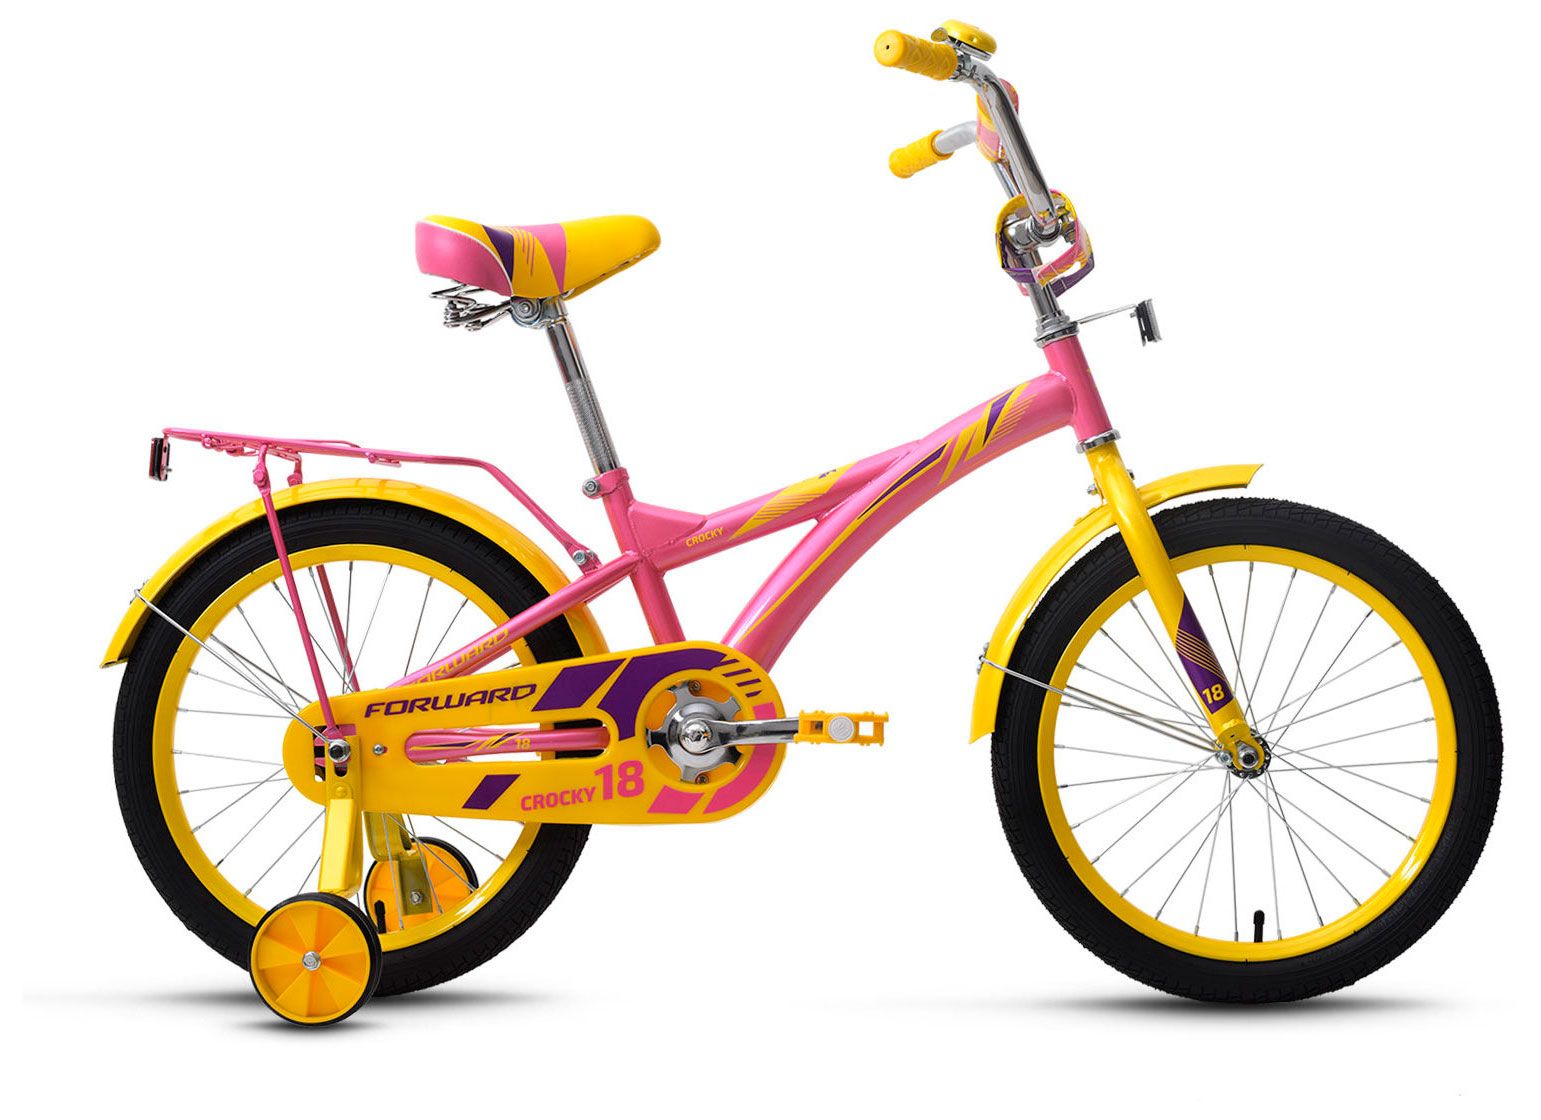  Отзывы о Трехколесный детский велосипед Forward Crocky 18 2018